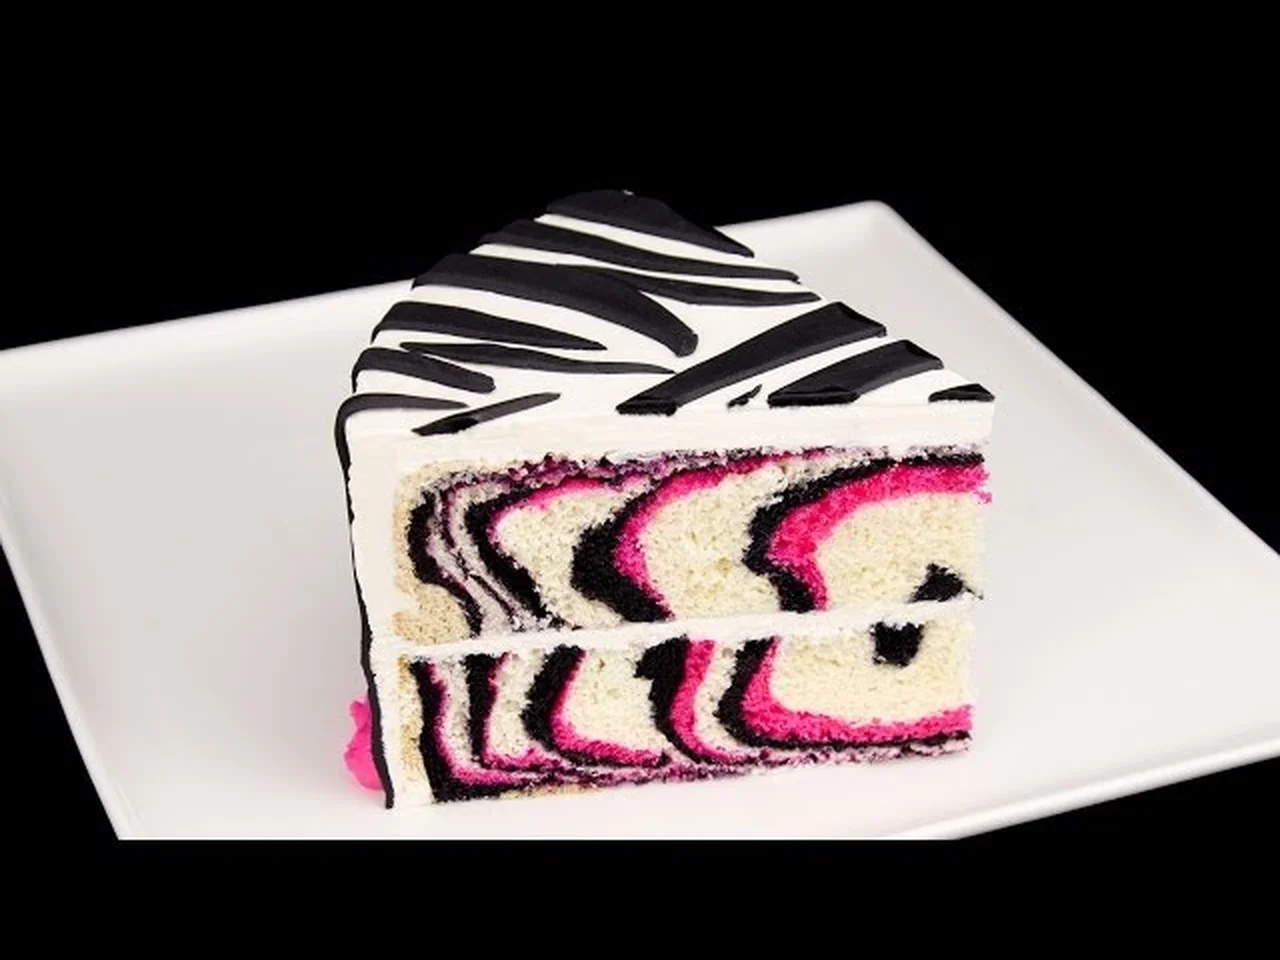 Jak zrobić tort zebra :)